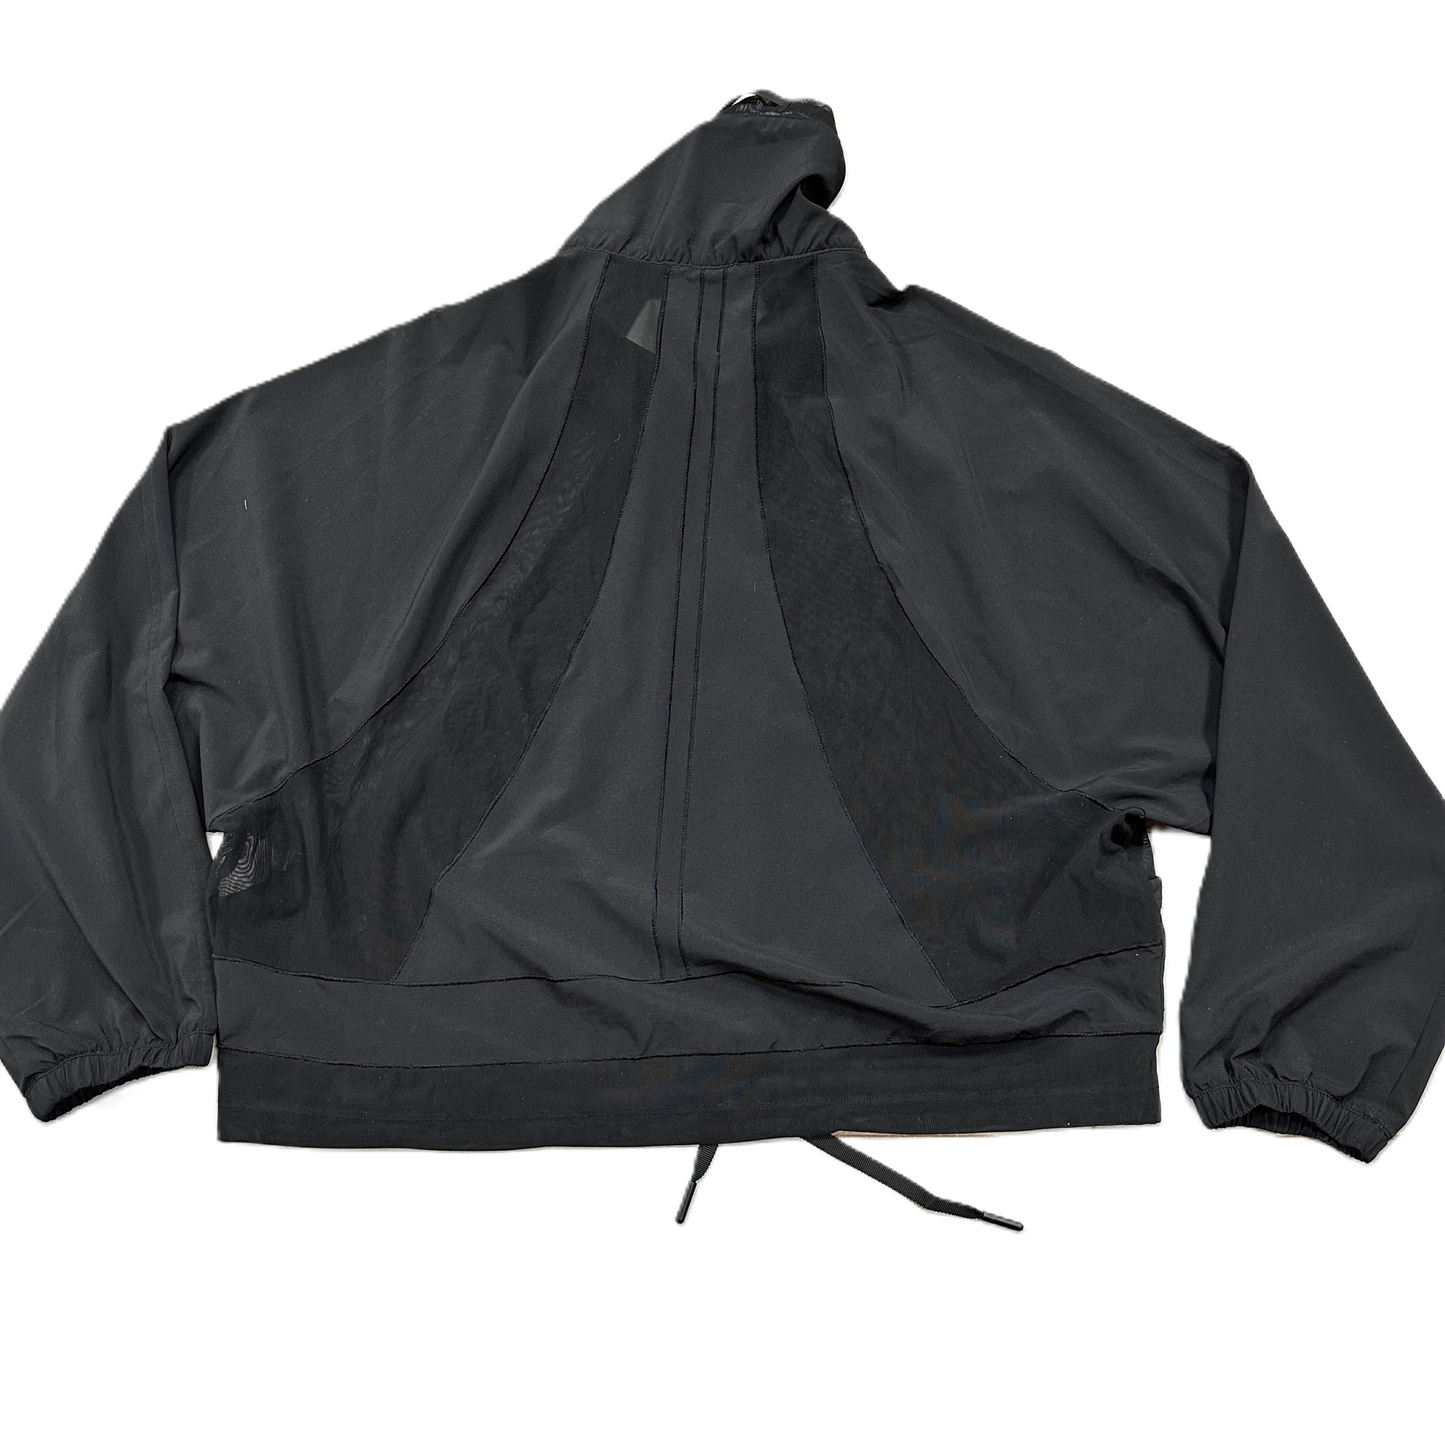 Black Athletic Jacket By Lululemon, Size: S